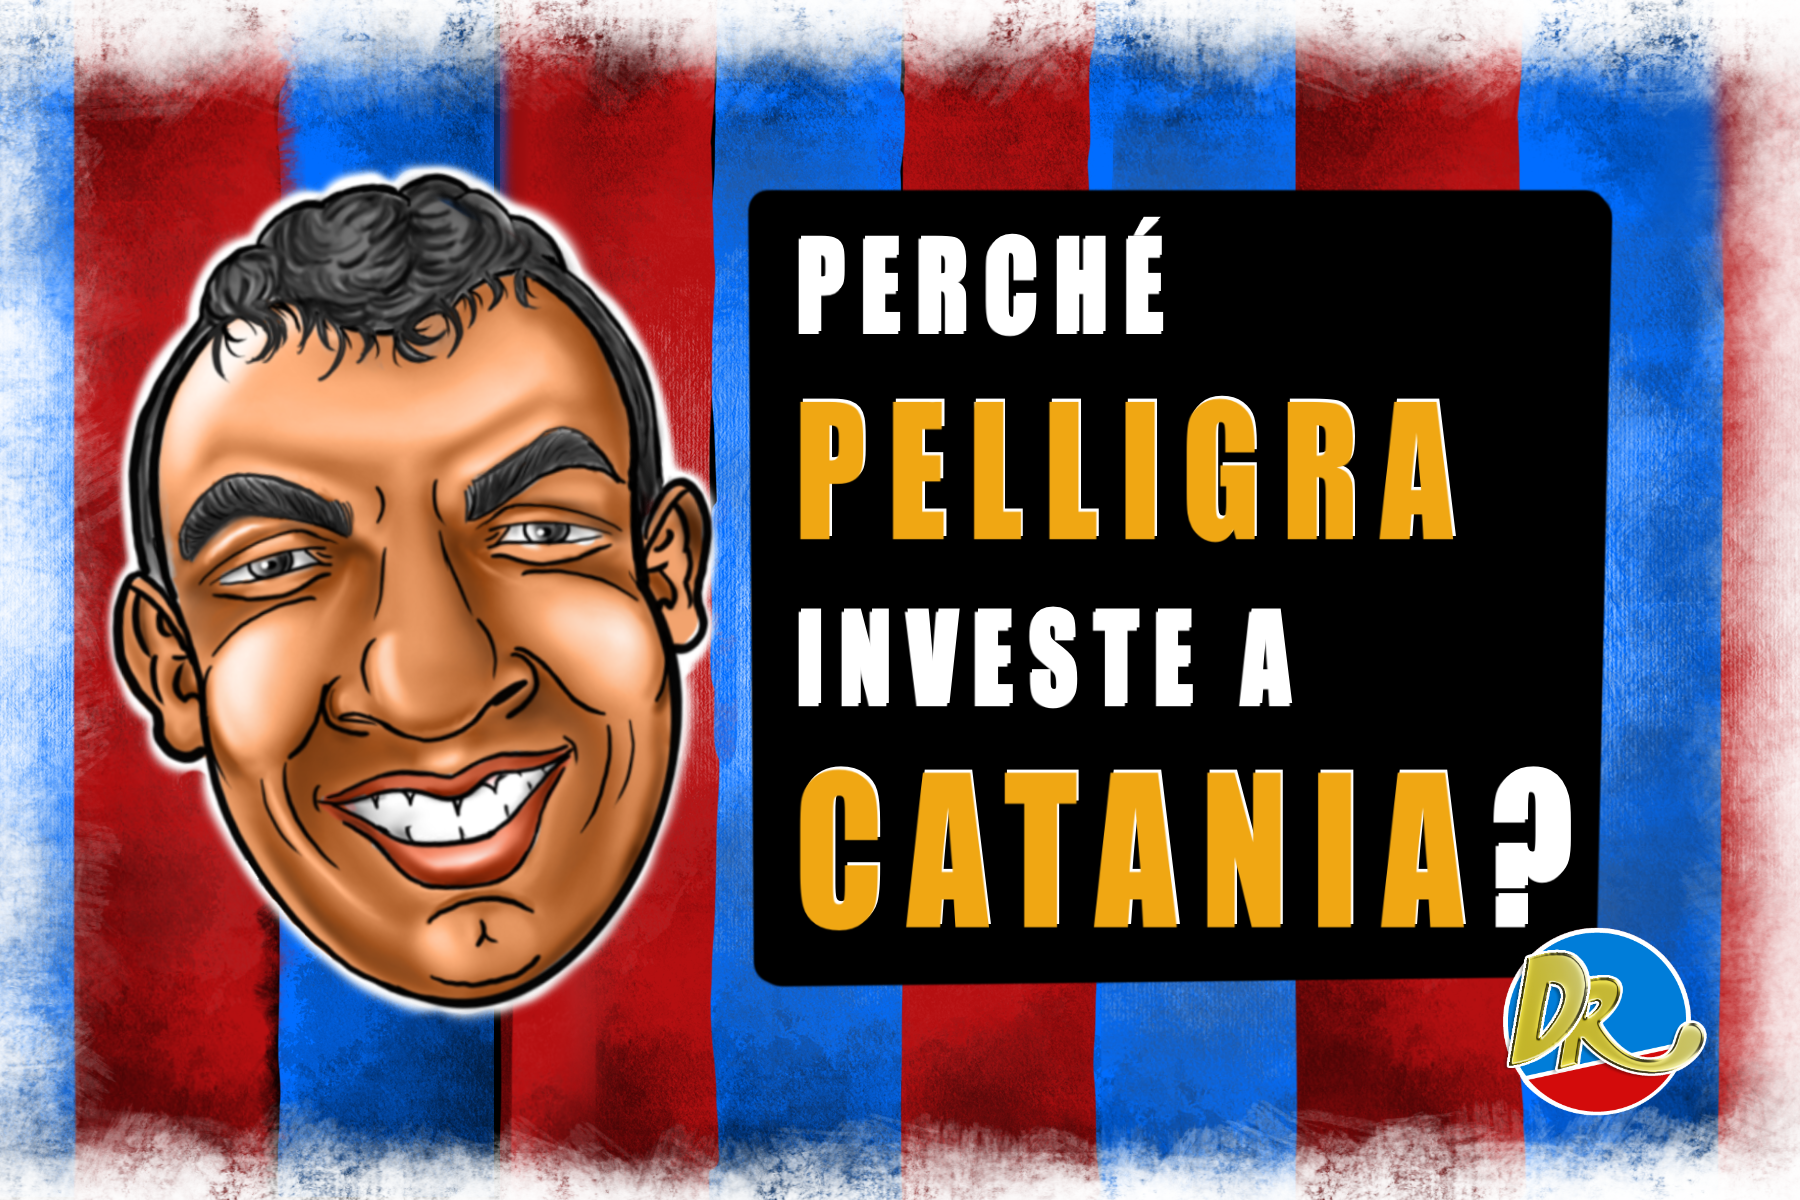 Perché Pelligra investe a Catania?